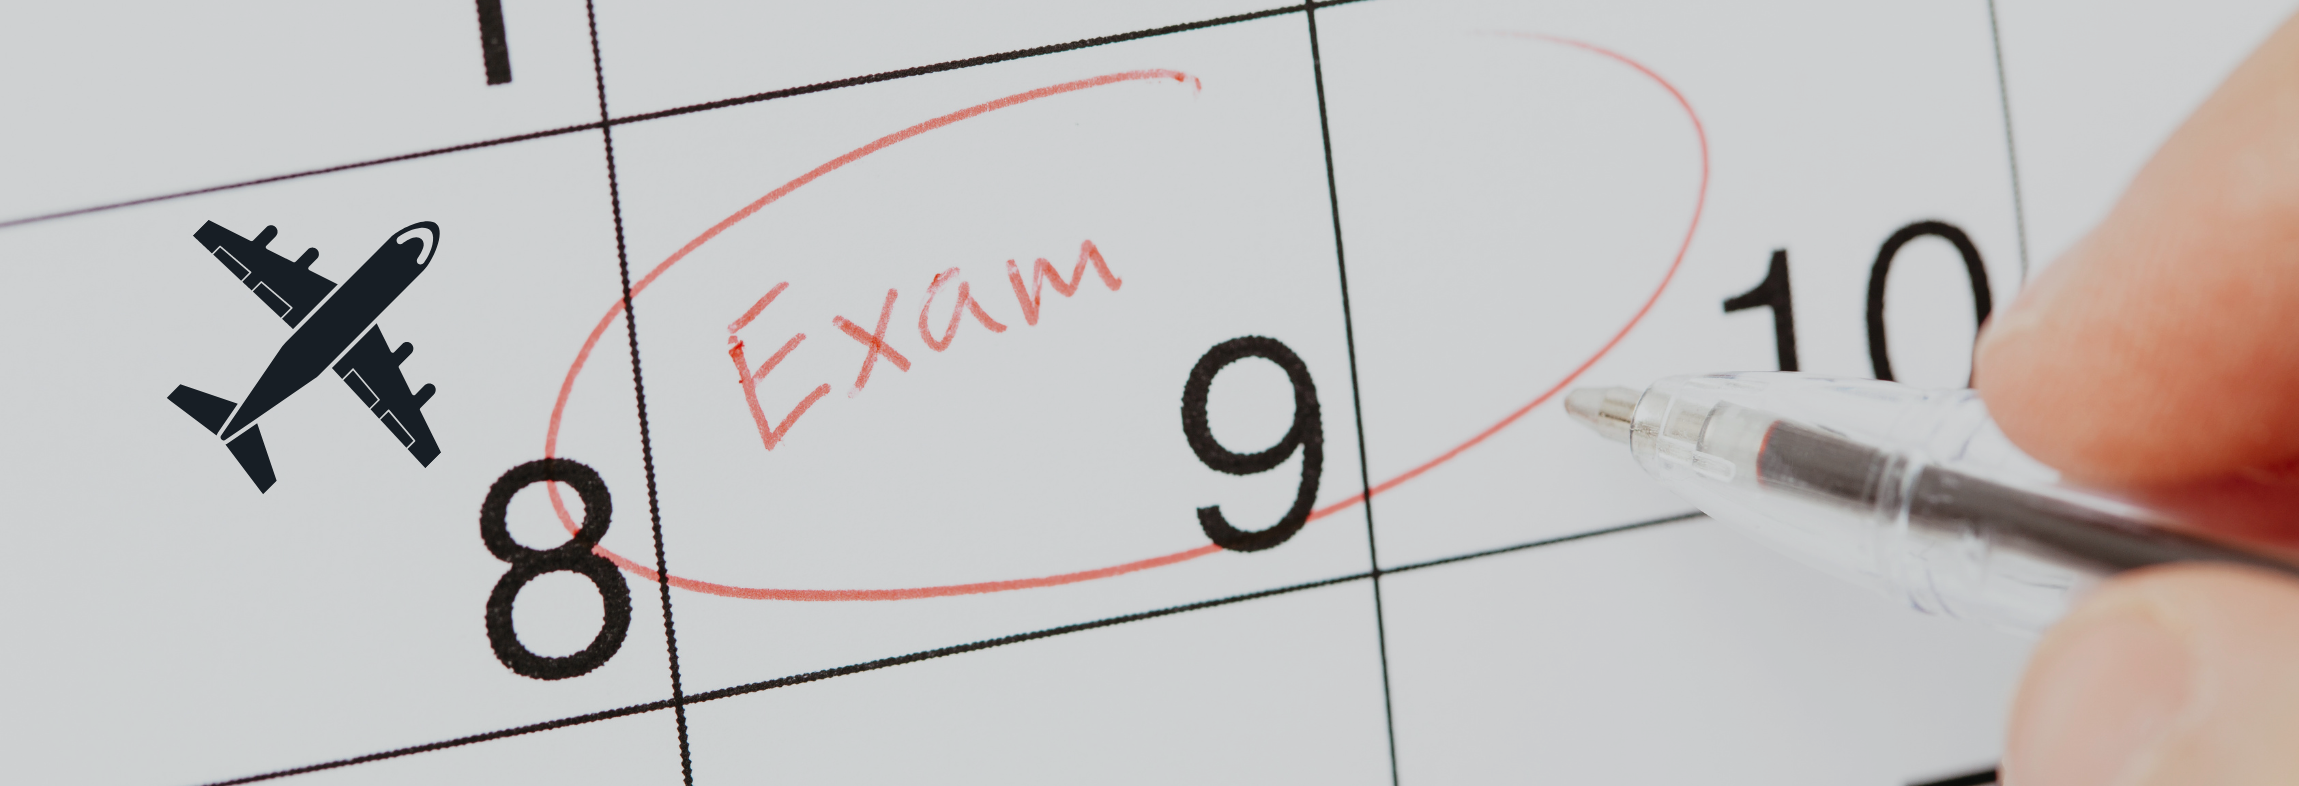 Egzaminy - dostępne daty